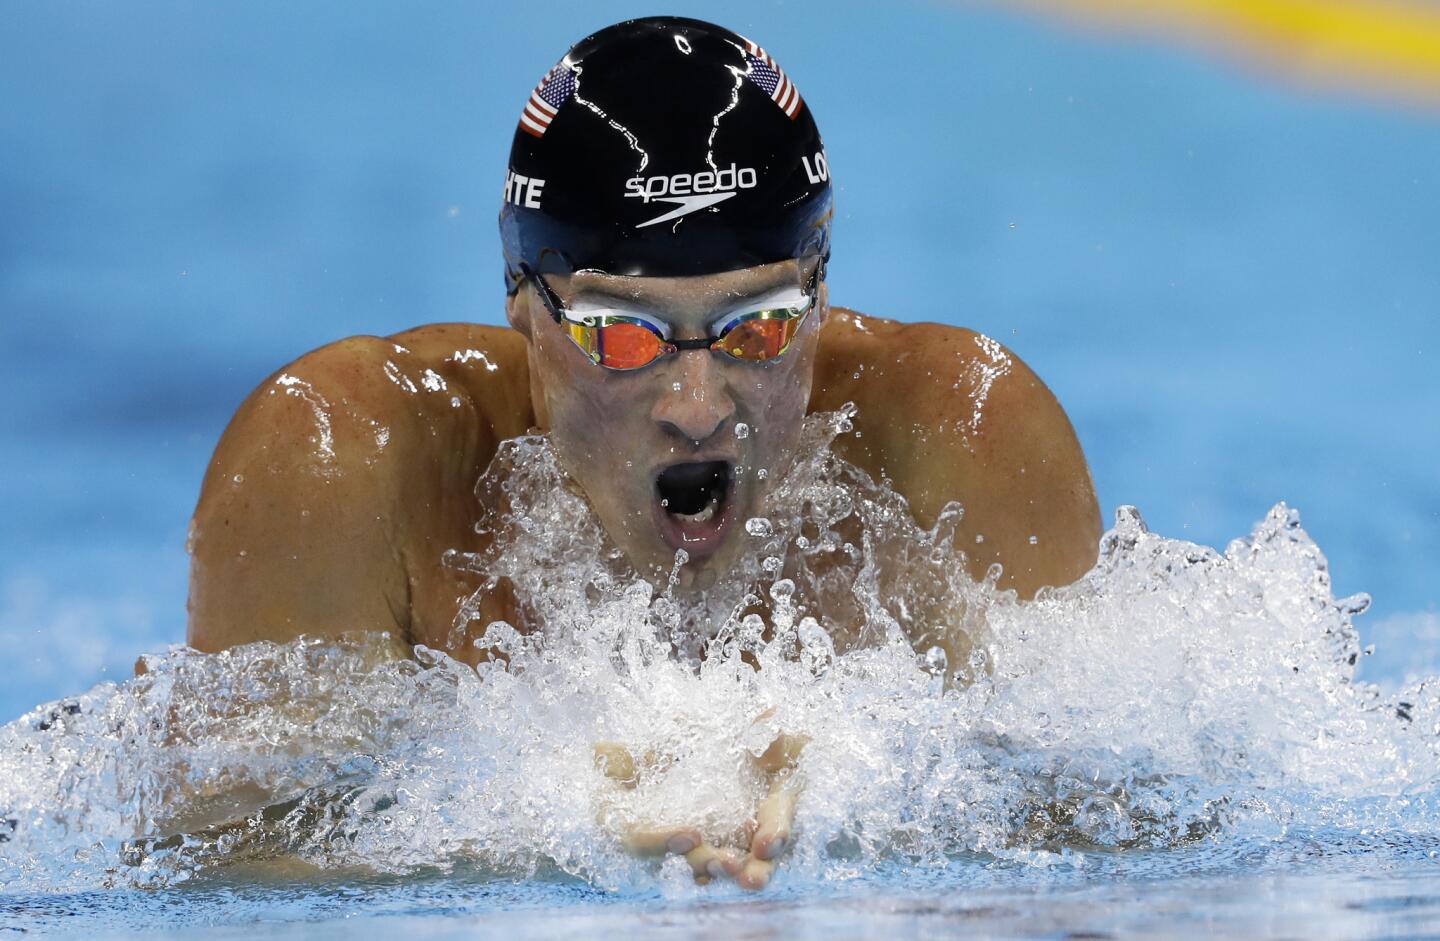 USA swimmer Ryan Lochte